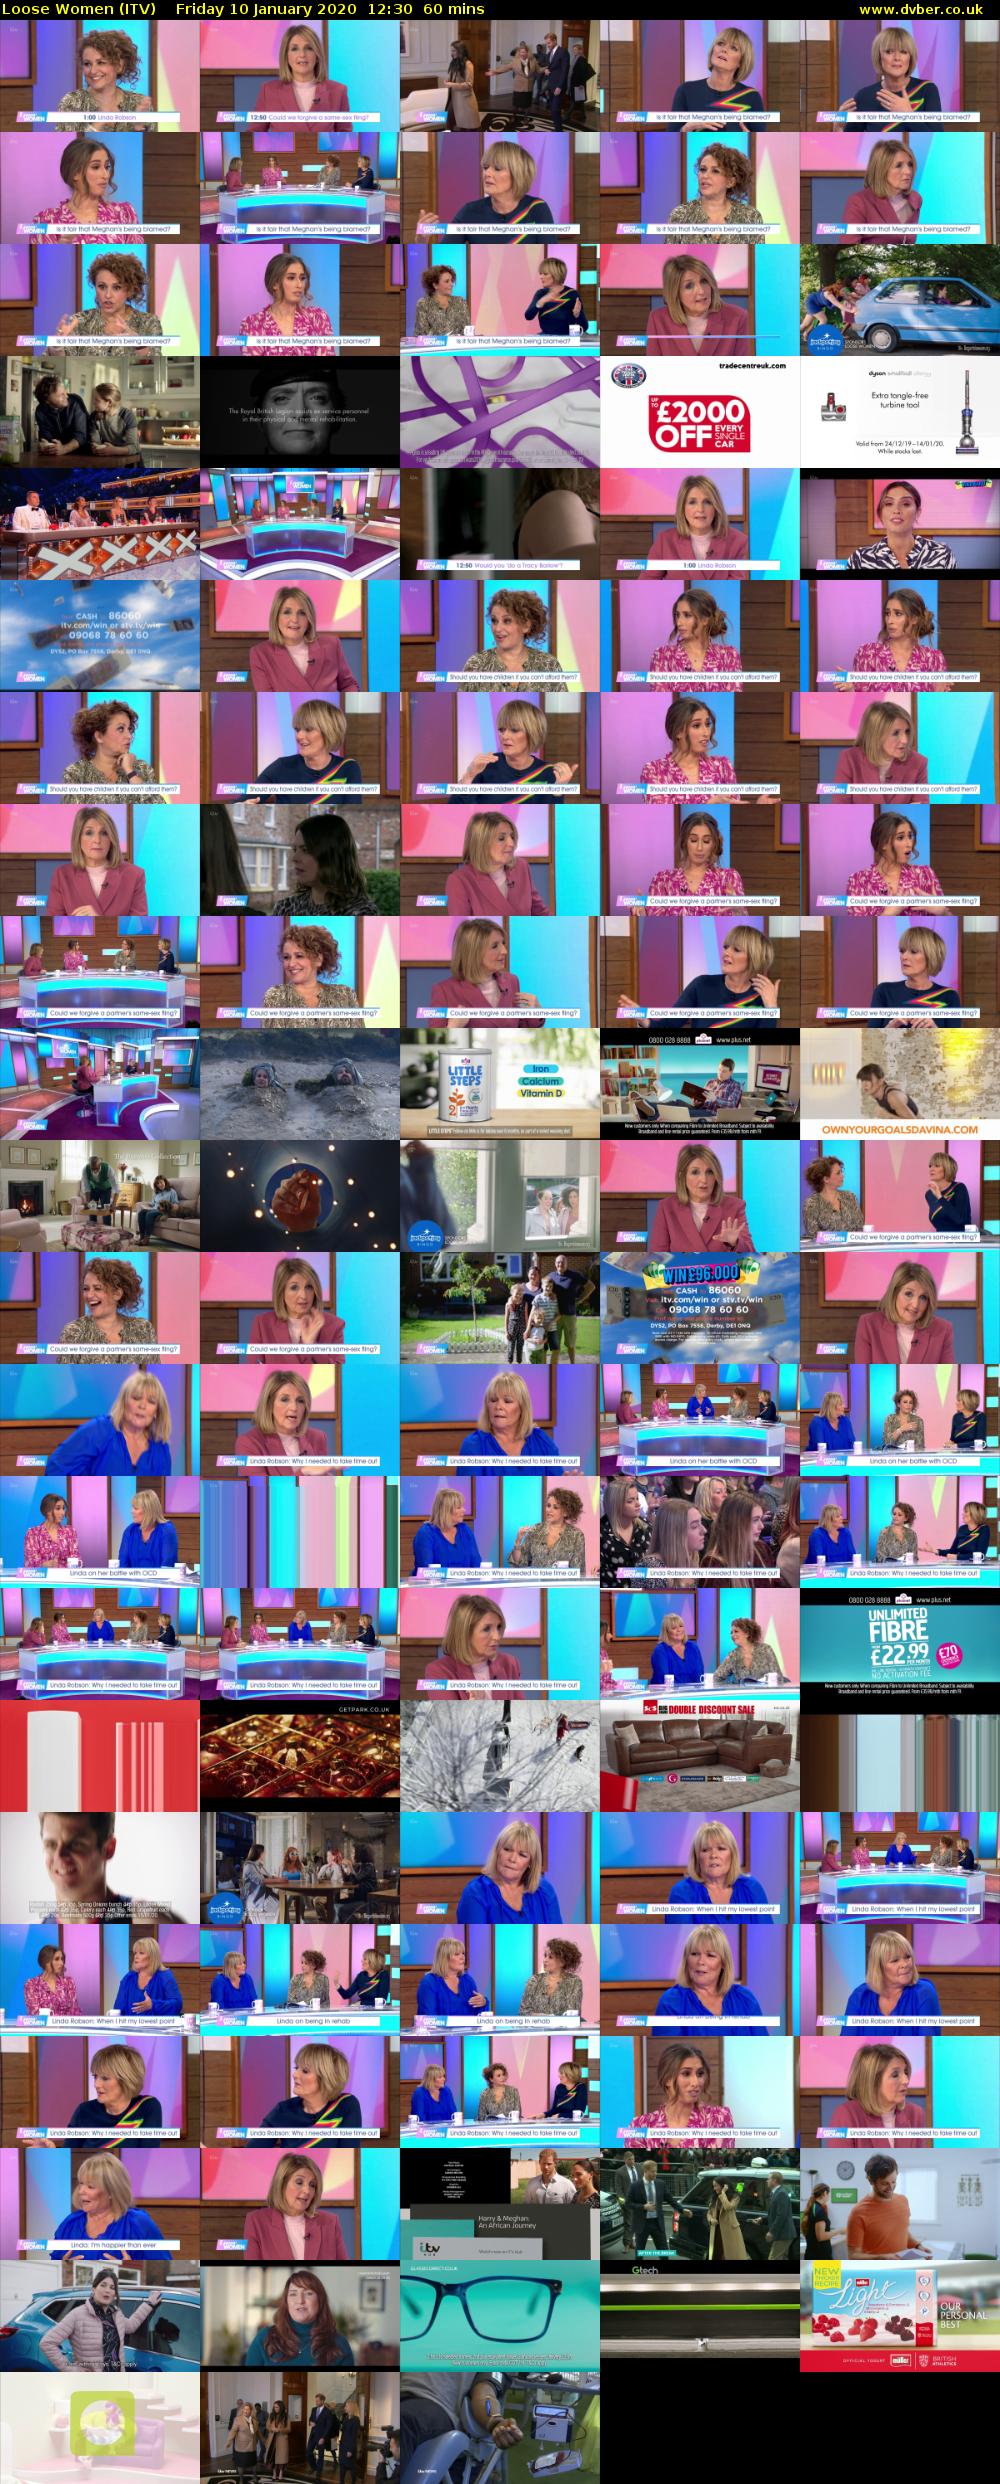 Loose Women (ITV) Friday 10 January 2020 12:30 - 13:30